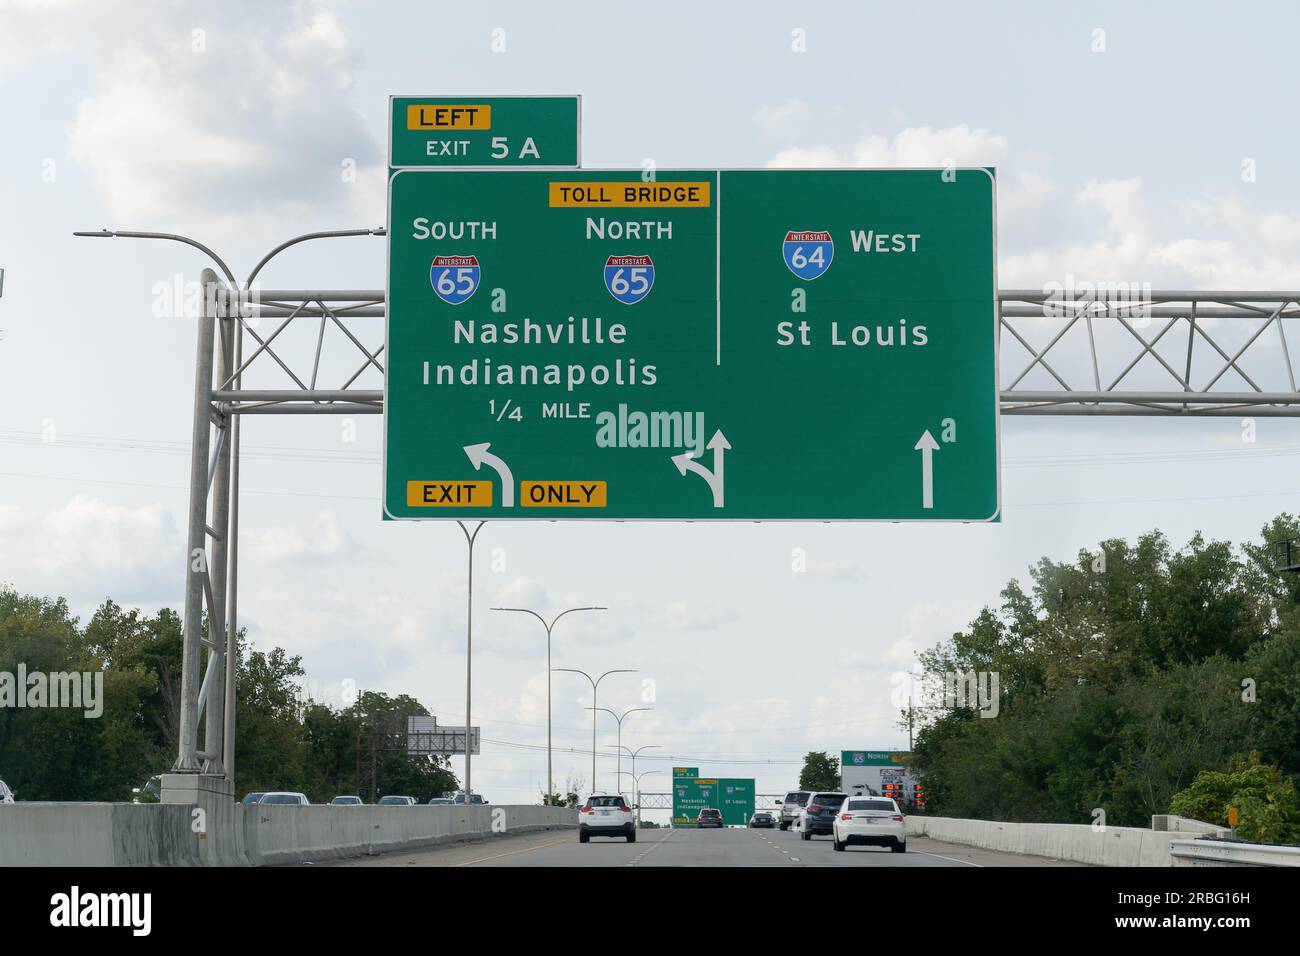 Louisville, Kentucky - 10 septembre 2021 : sortie 5a panneau à l'intersection de l'I64 West vers St Louis et De L'I65 North - South vers Nashville et Indiana Banque D'Images